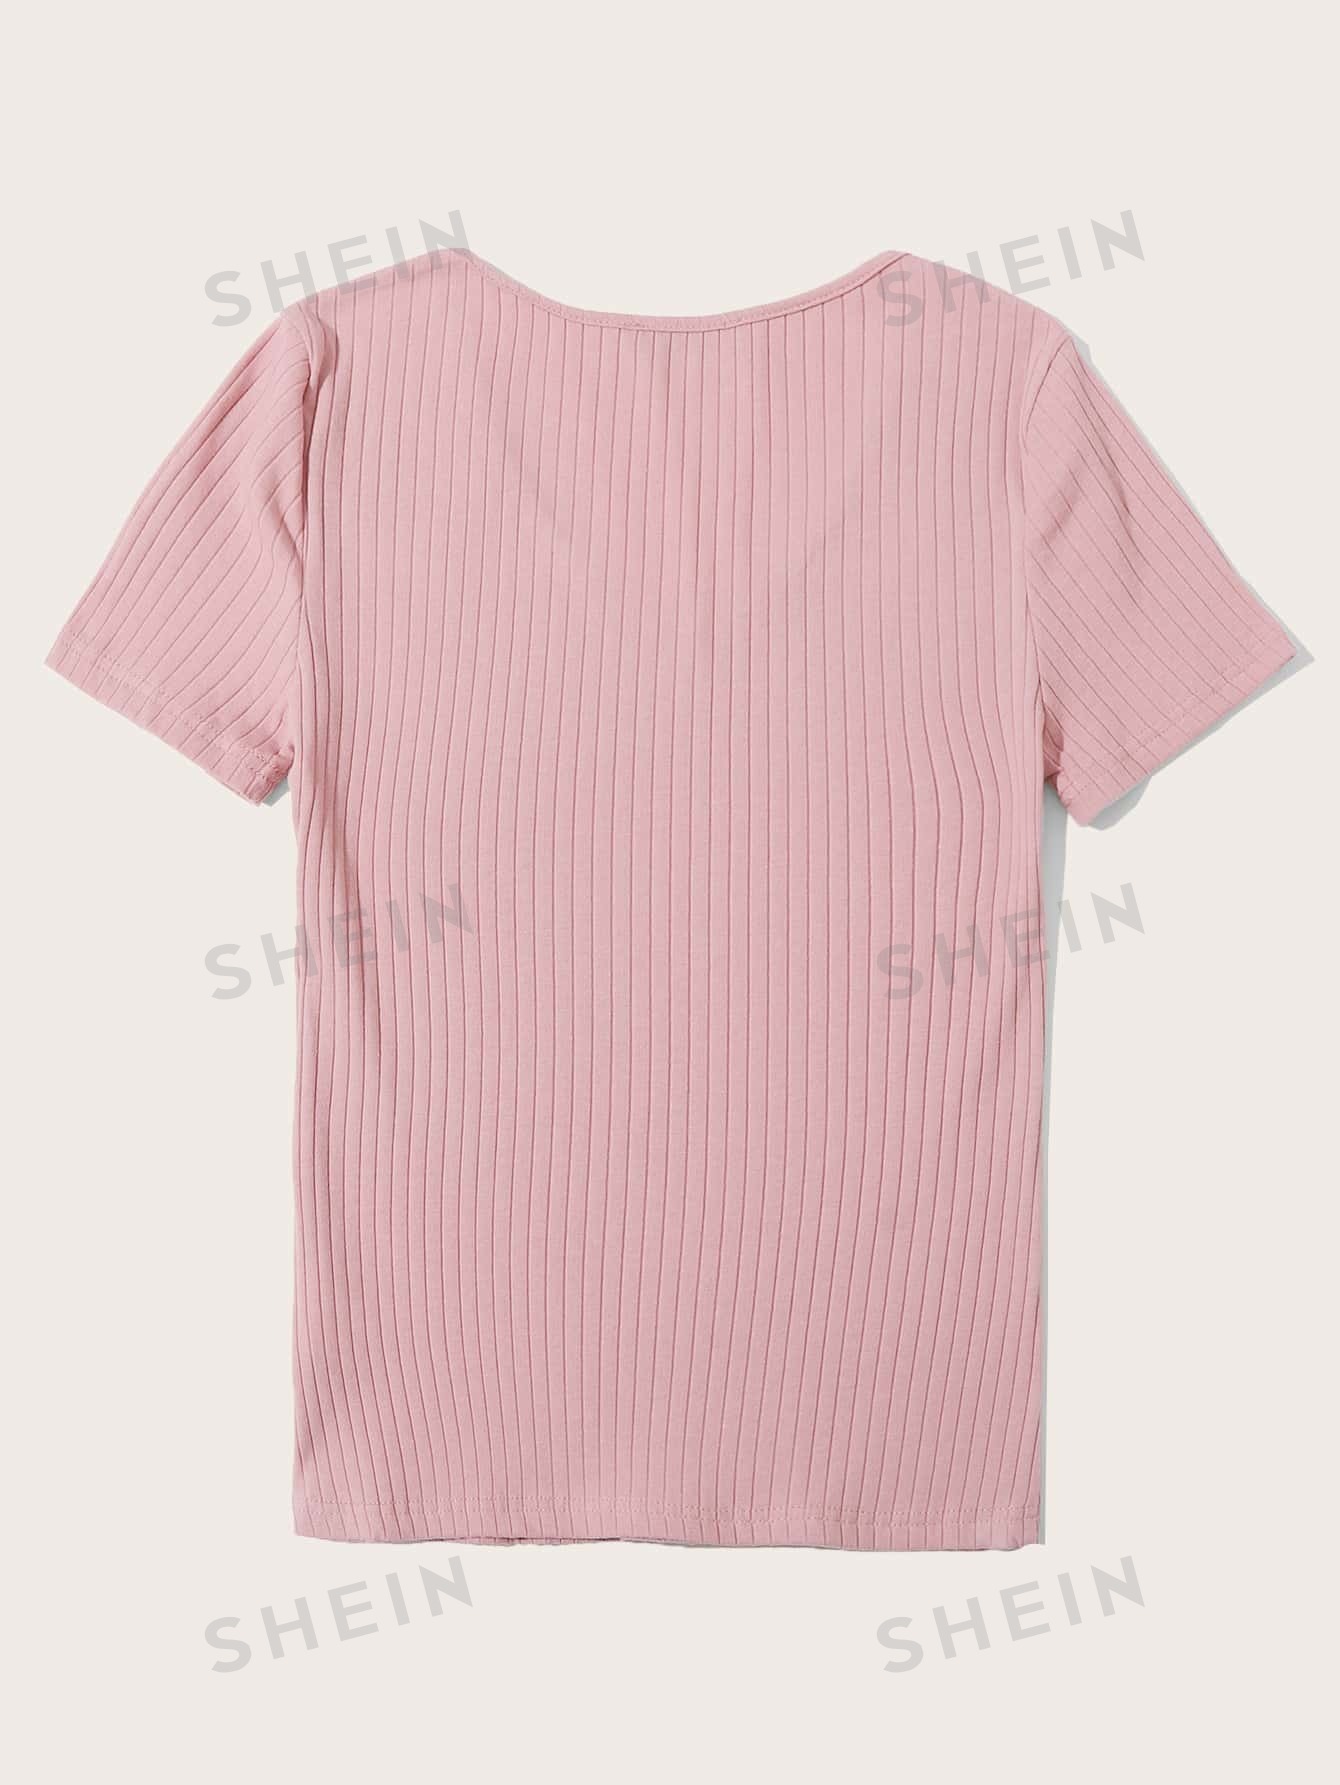 SHEIN Essnce однотонная повседневная трикотажная футболка в рубчик с короткими рукавами, розовый осенние повседневные базовые топы женские топы 3xl 4xl свободные футболки с v образным вырезом и длинным рукавом однотонные kkfy6350